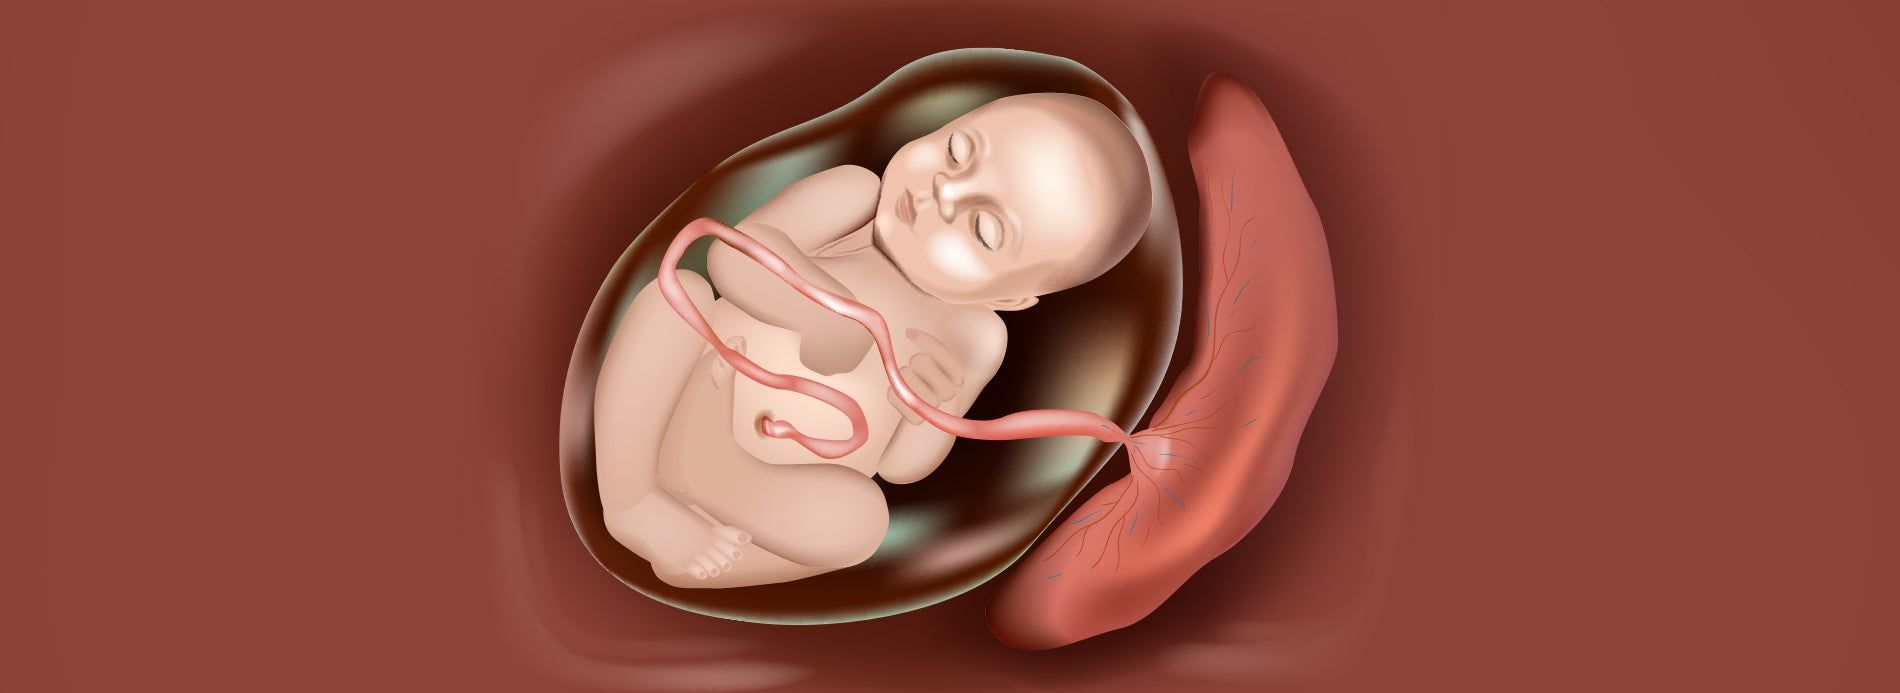 Umbilical Cord vs Placenta